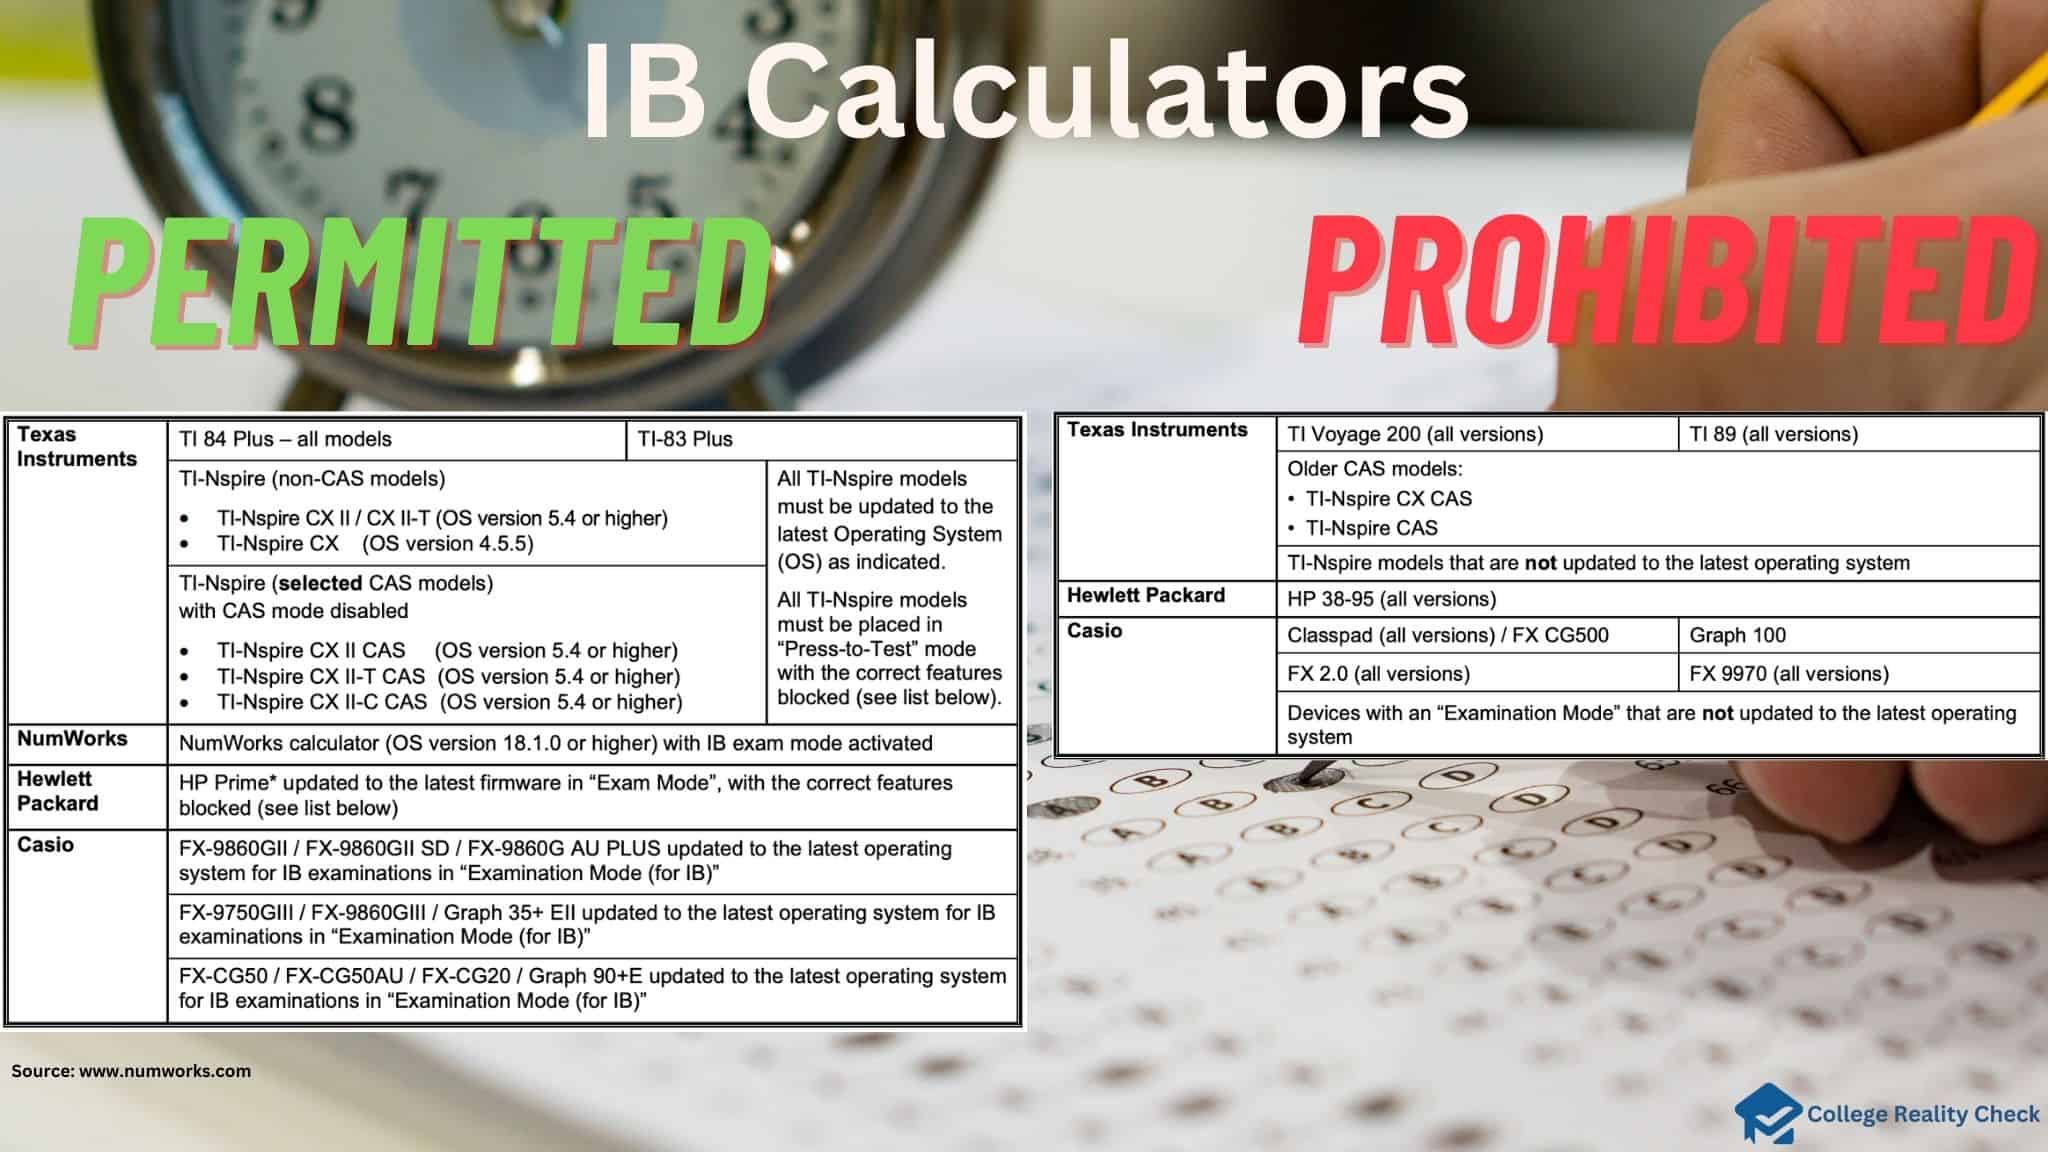 IB calculators